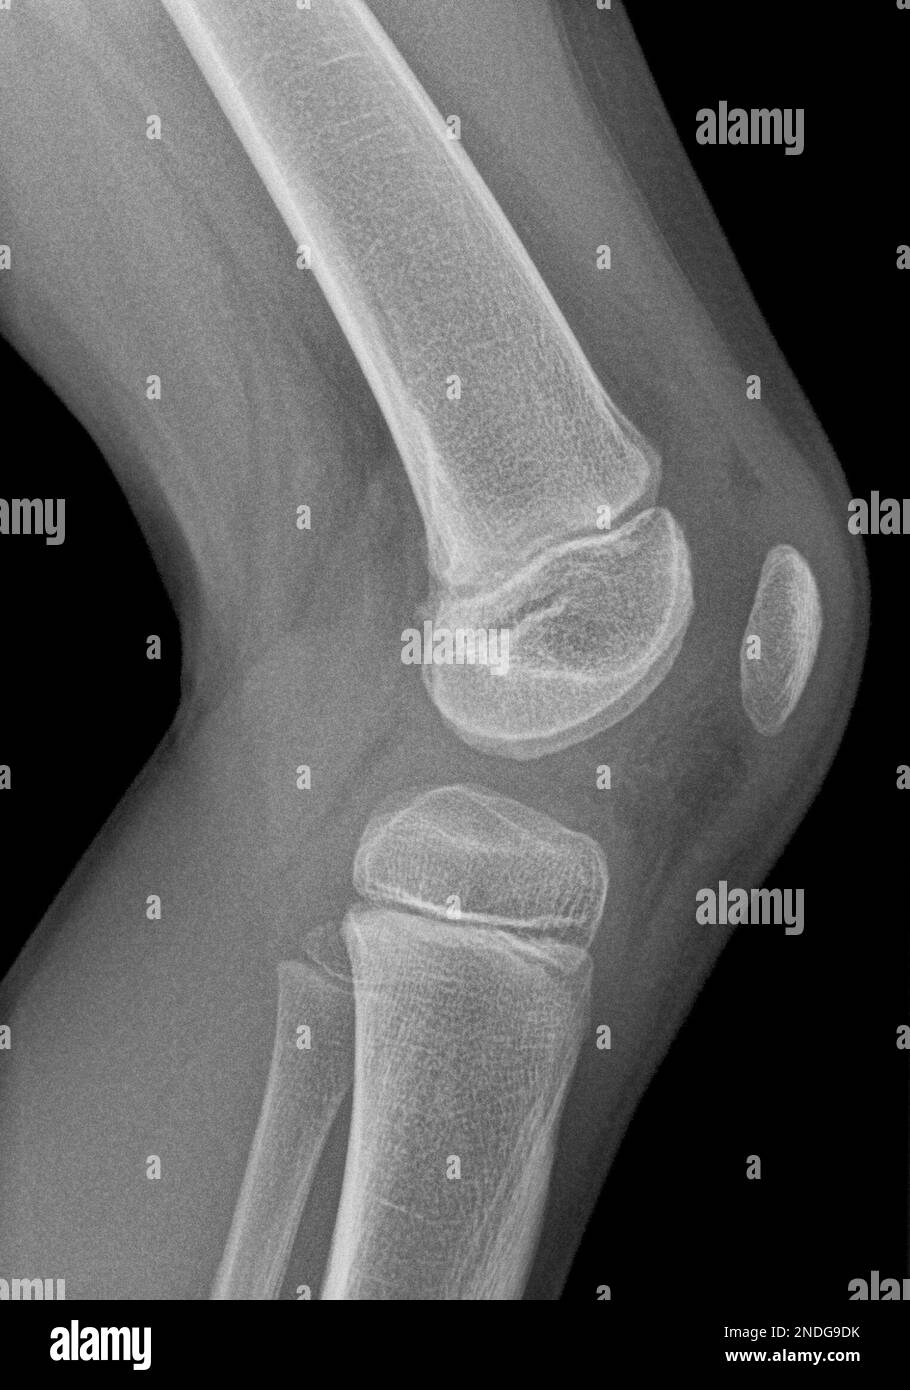 Image radiographique d'un genou en projection latérale d'une jeune fille de cinq ans. Un petit œdème est présent, indiquant une inflammation possible. Banque D'Images